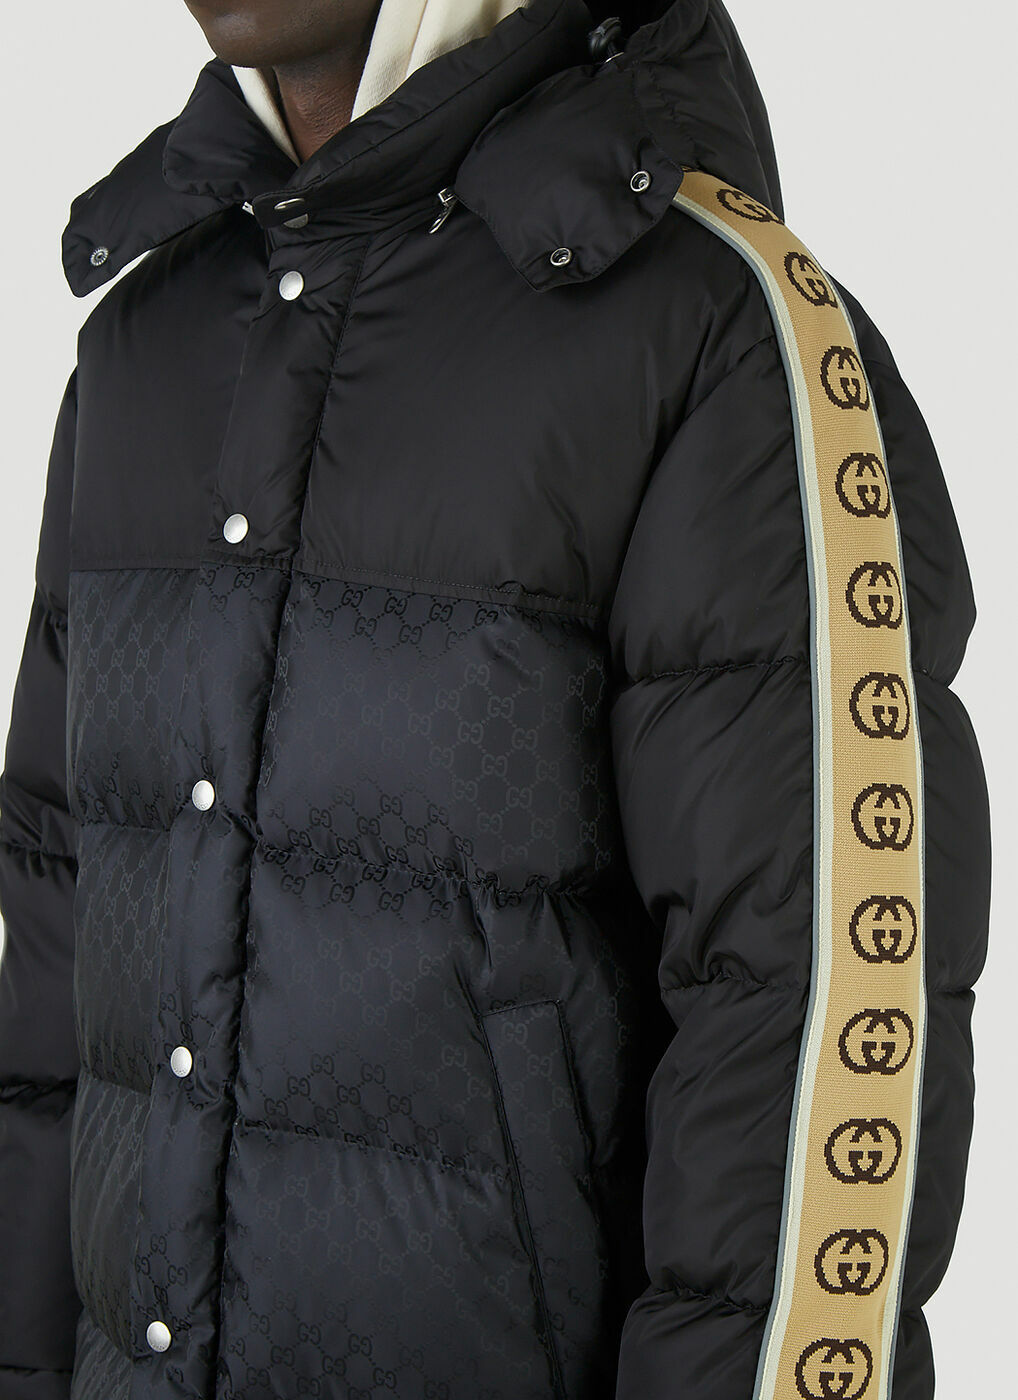 GG Nylon Padded Coat in Black Gucci